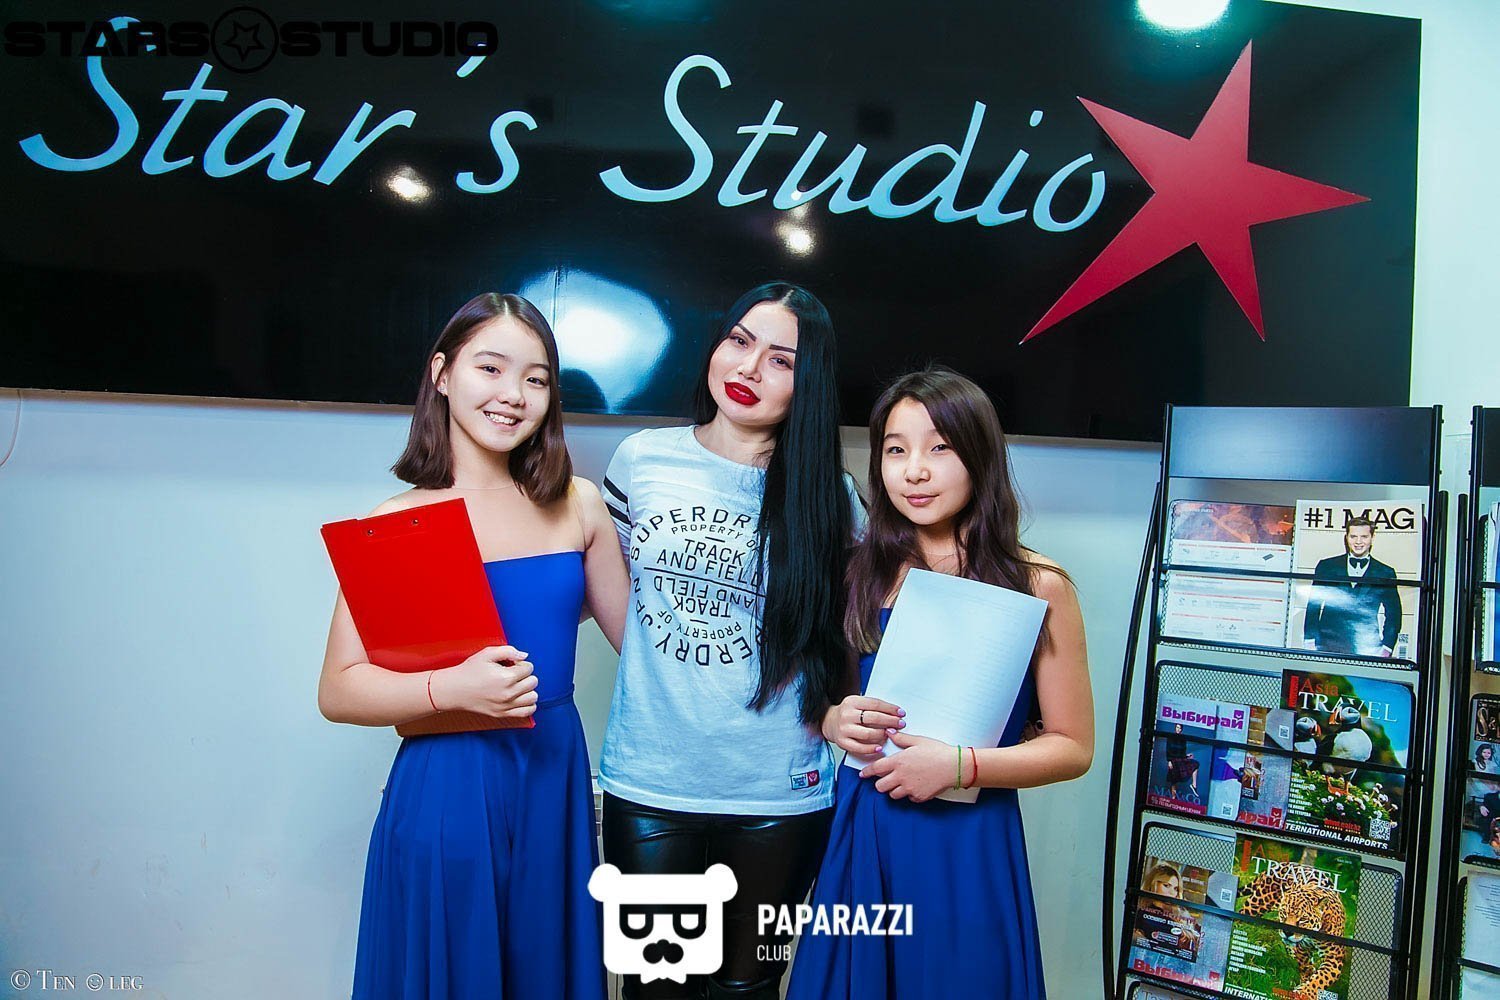 Star's Studio